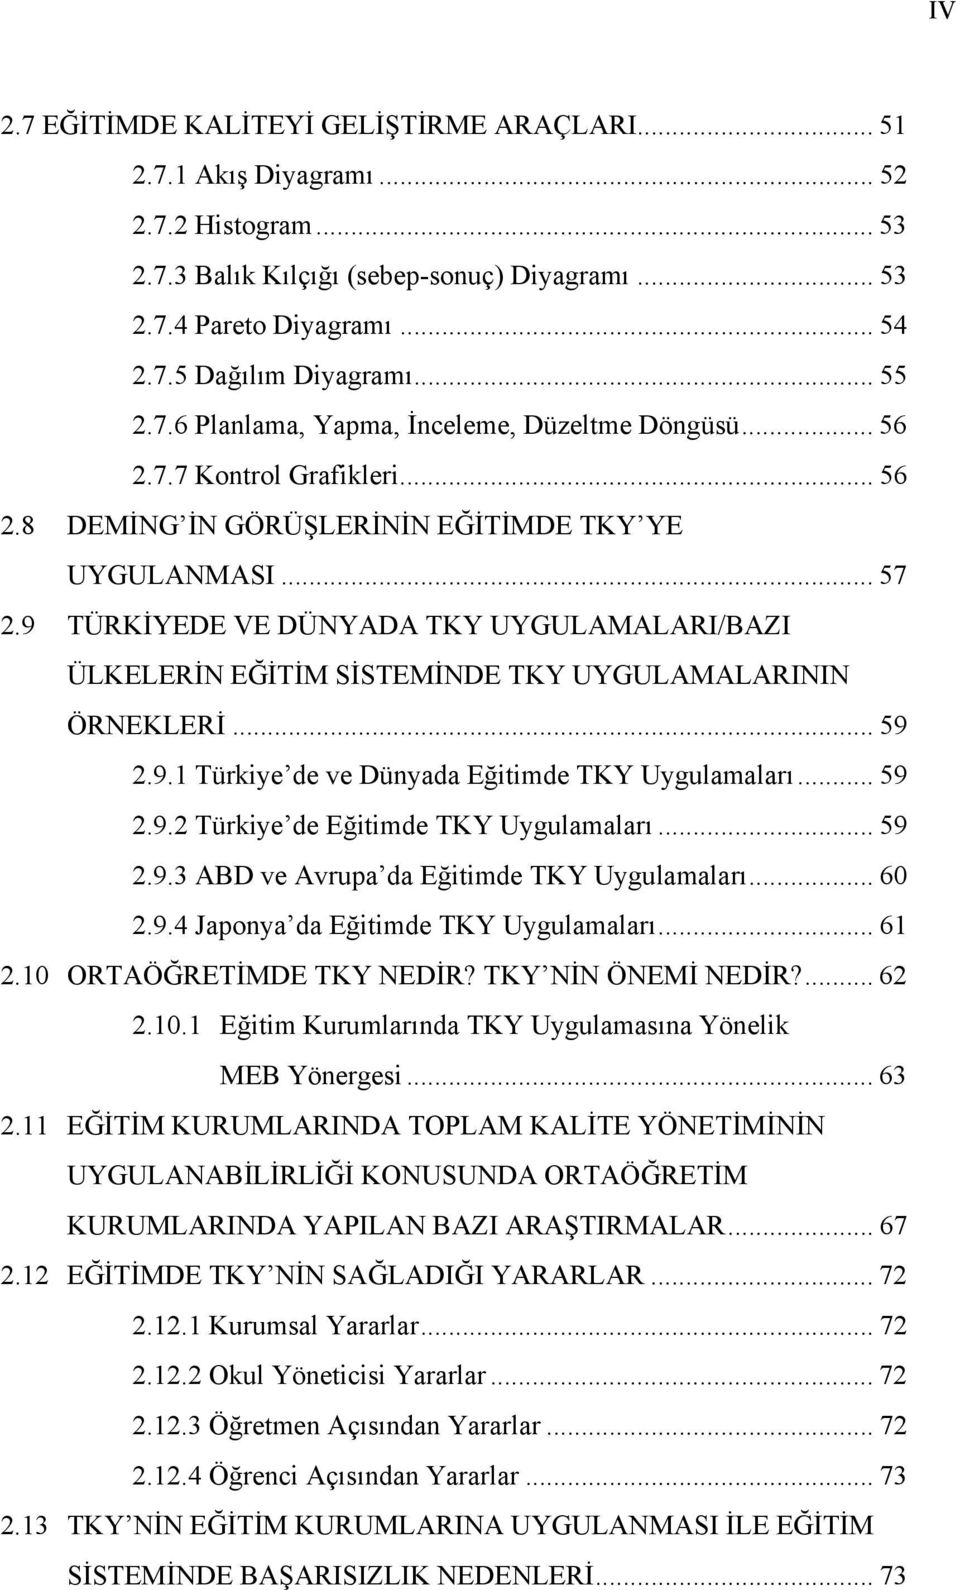 9 TÜRKİYEDE VE DÜNYADA TKY UYGULAMALARI/BAZI ÜLKELERİN EĞİTİM SİSTEMİNDE TKY UYGULAMALARININ ÖRNEKLERİ... 59 2.9.1 Türkiye de ve Dünyada Eğitimde TKY Uygulamaları... 59 2.9.2 Türkiye de Eğitimde TKY Uygulamaları.